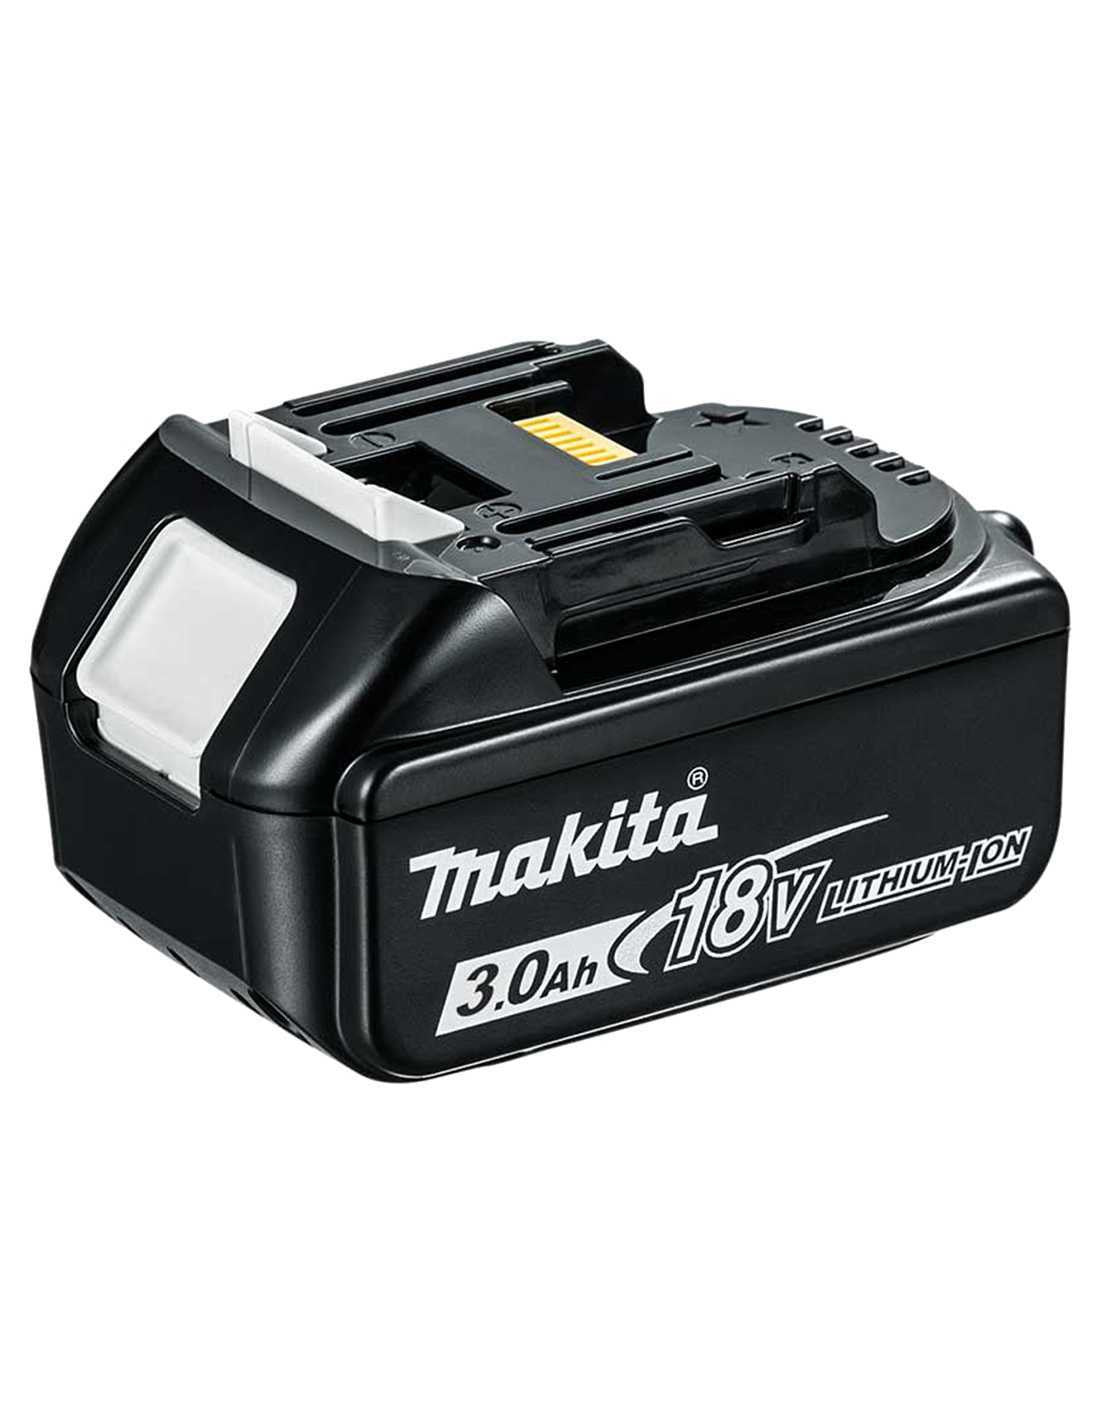 Makita-Set mit 10 Werkzeugen + 3 3-Ah-Akkus + Ladegerät + 2 Taschen DLX1080BL3